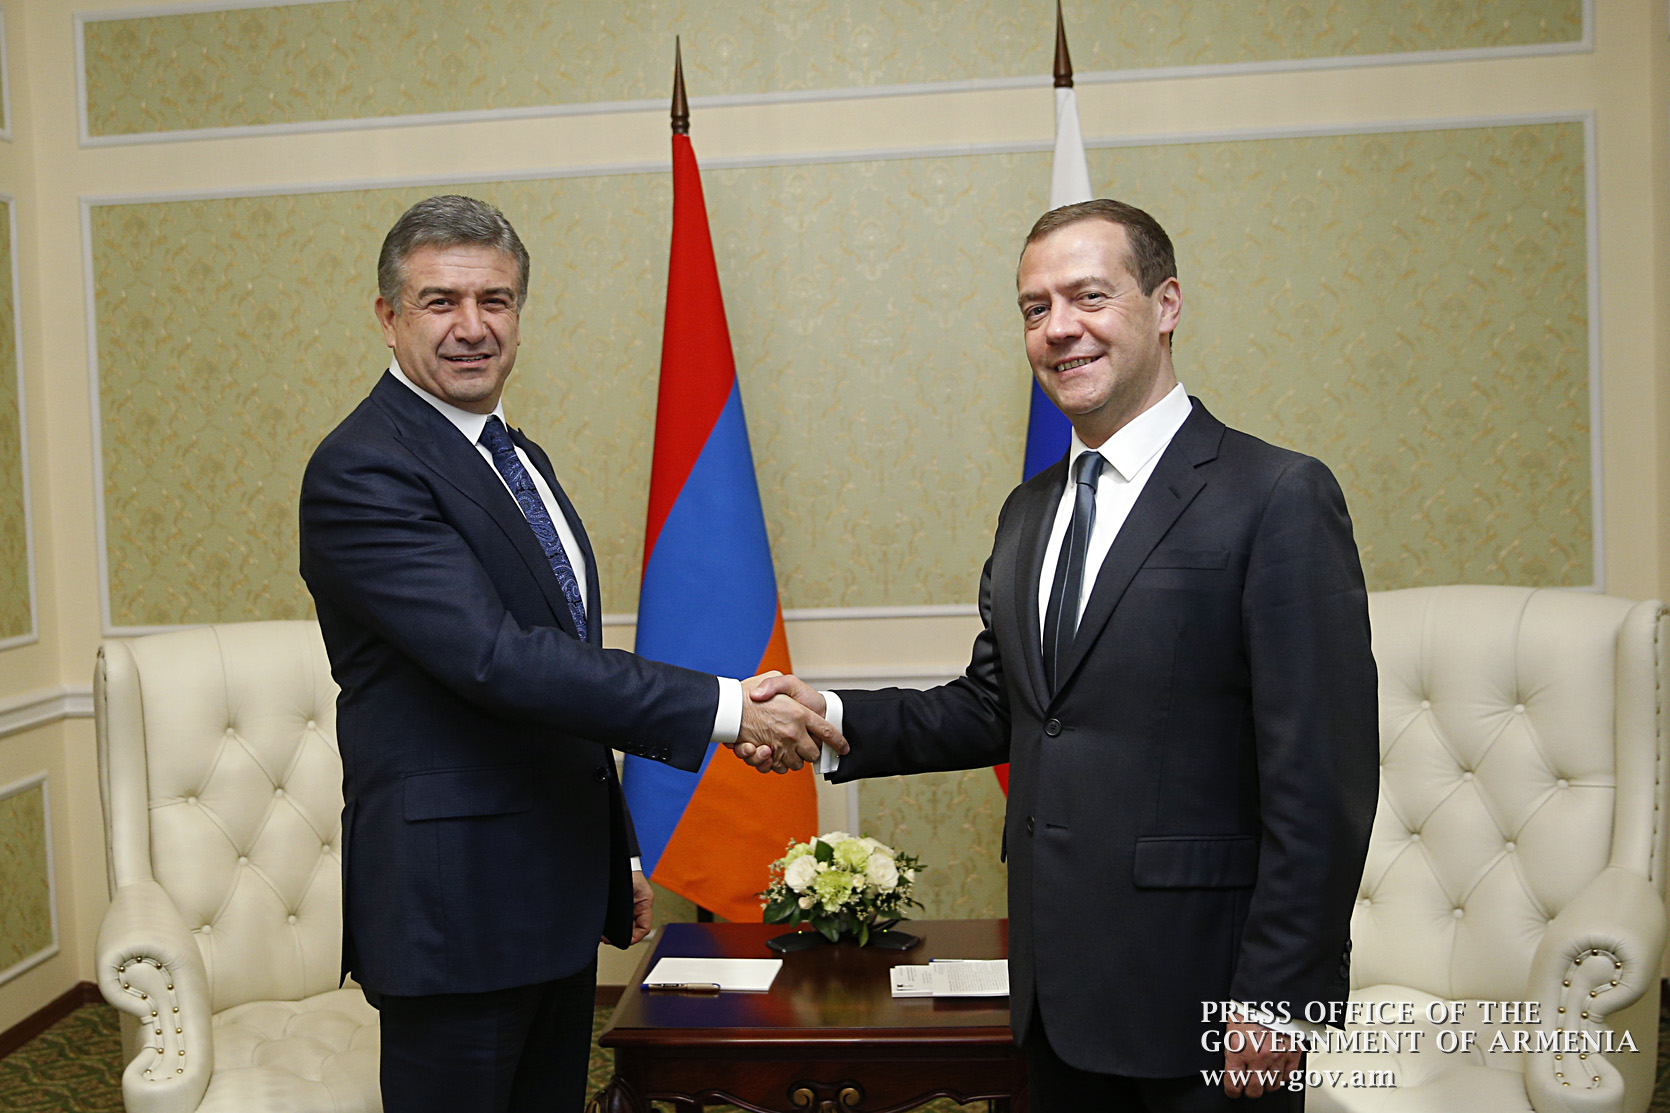 Ermenistan ve Rusya Başbakanları bir araya geldi